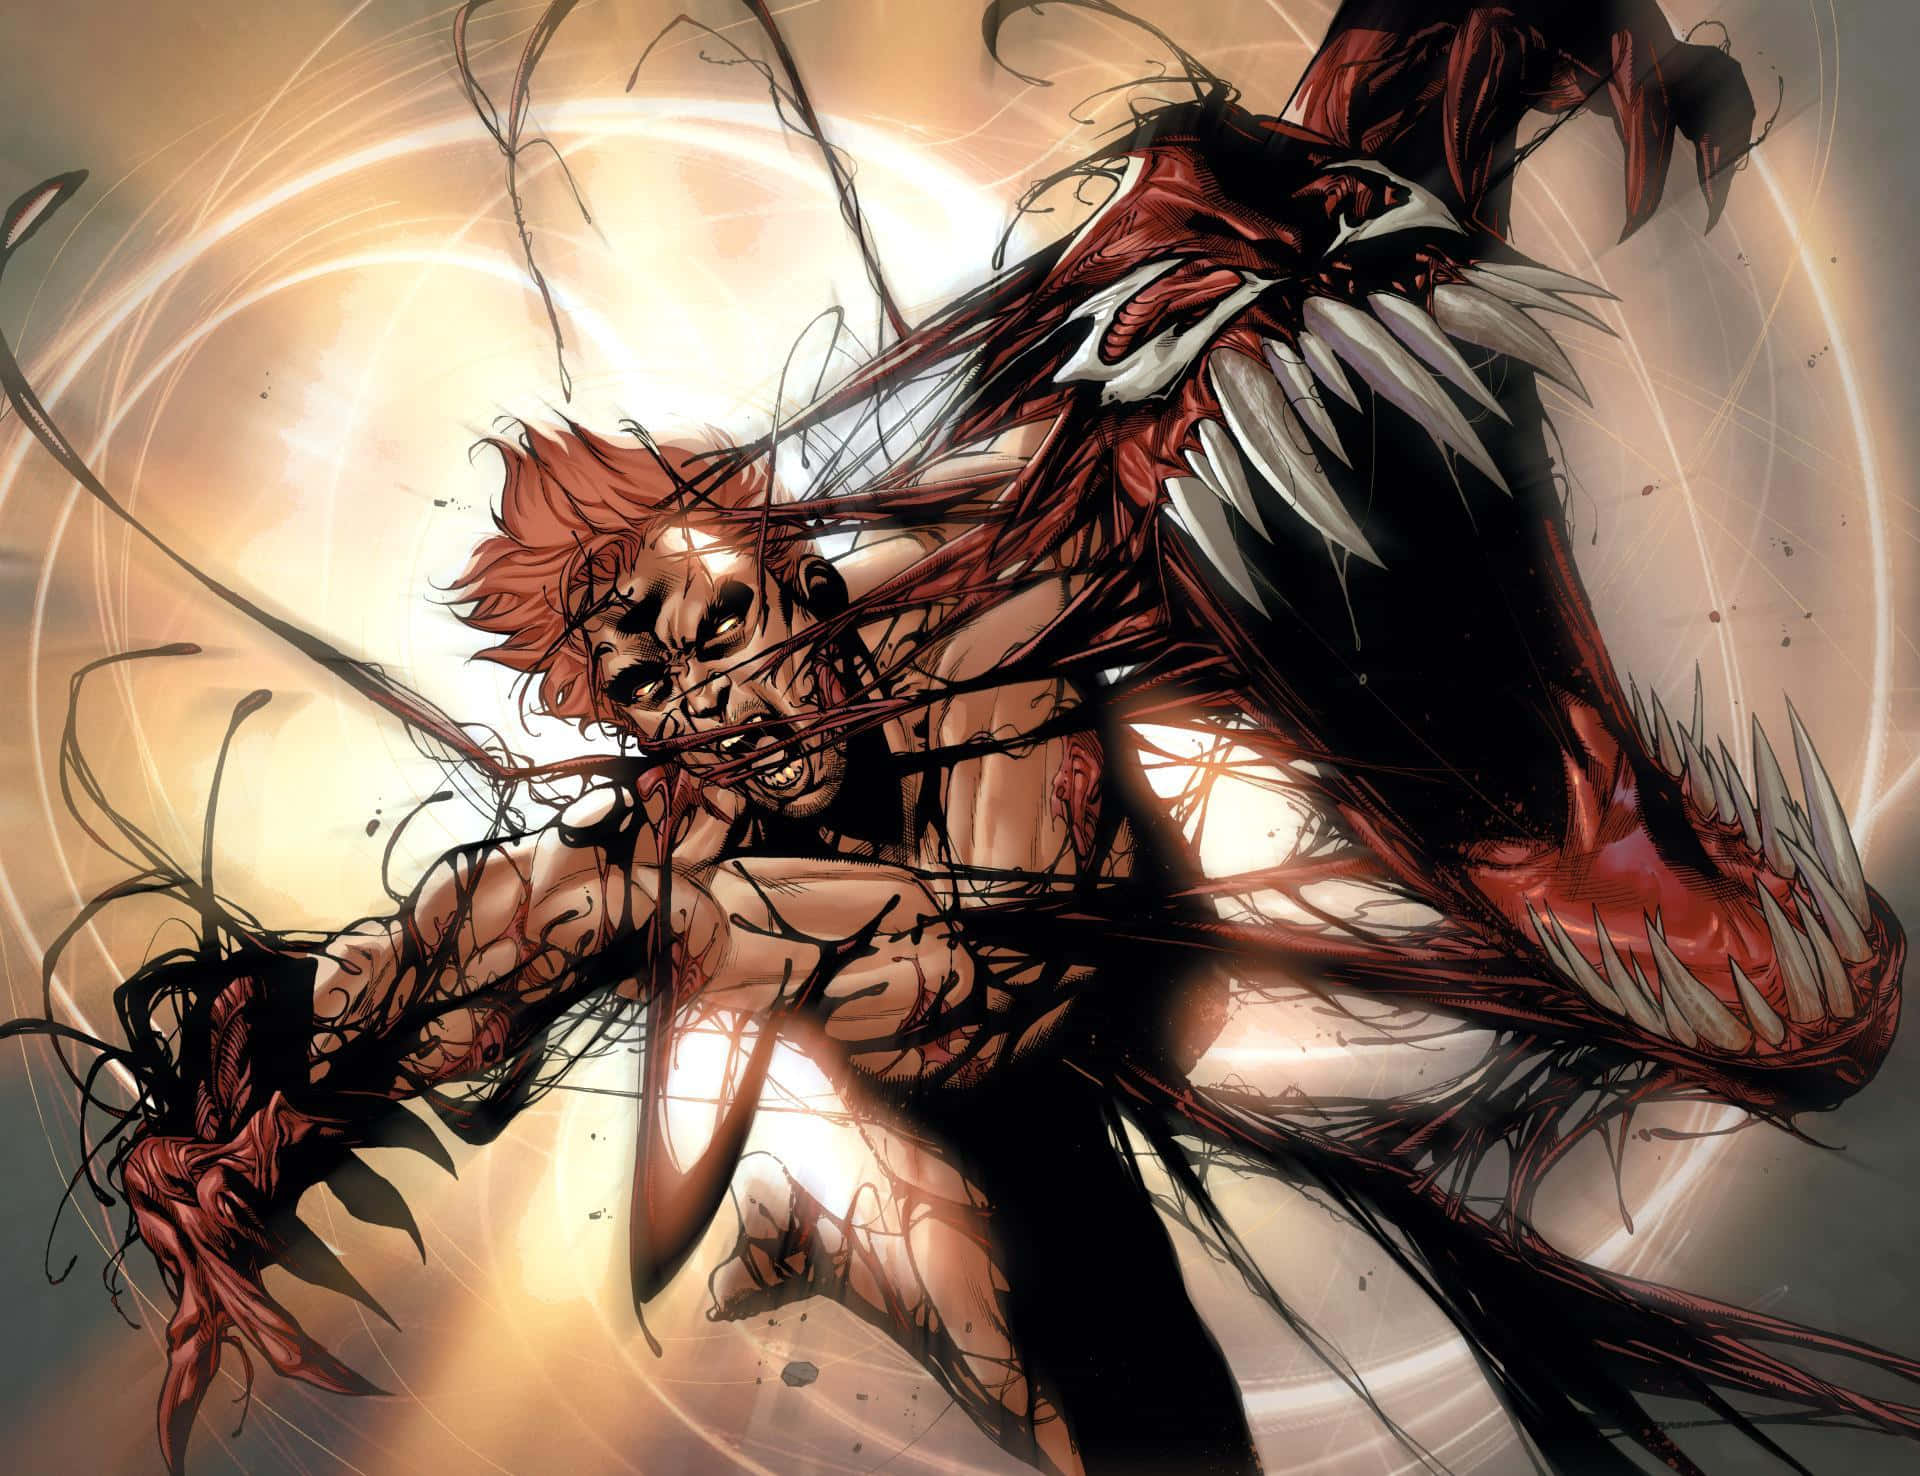 Einepischer Showdown Zwischen Spider Carnage Und Venom Wallpaper